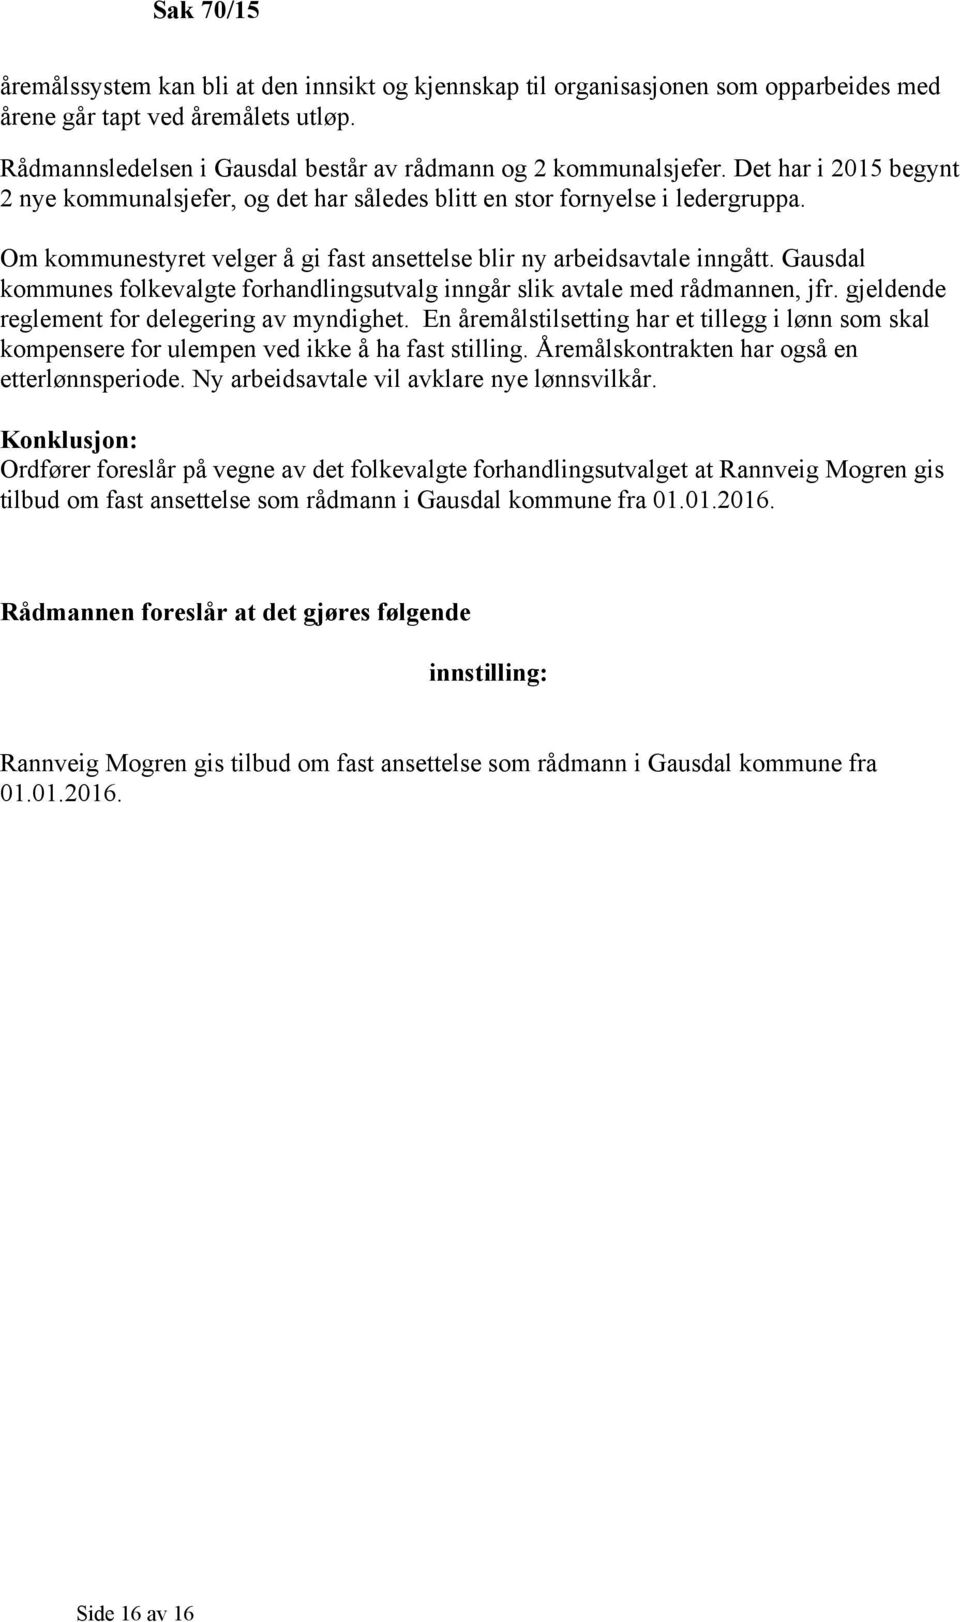 Gausdal kommunes folkevalgte forhandlingsutvalg inngår slik avtale med rådmannen, jfr. gjeldende reglement for delegering av myndighet.